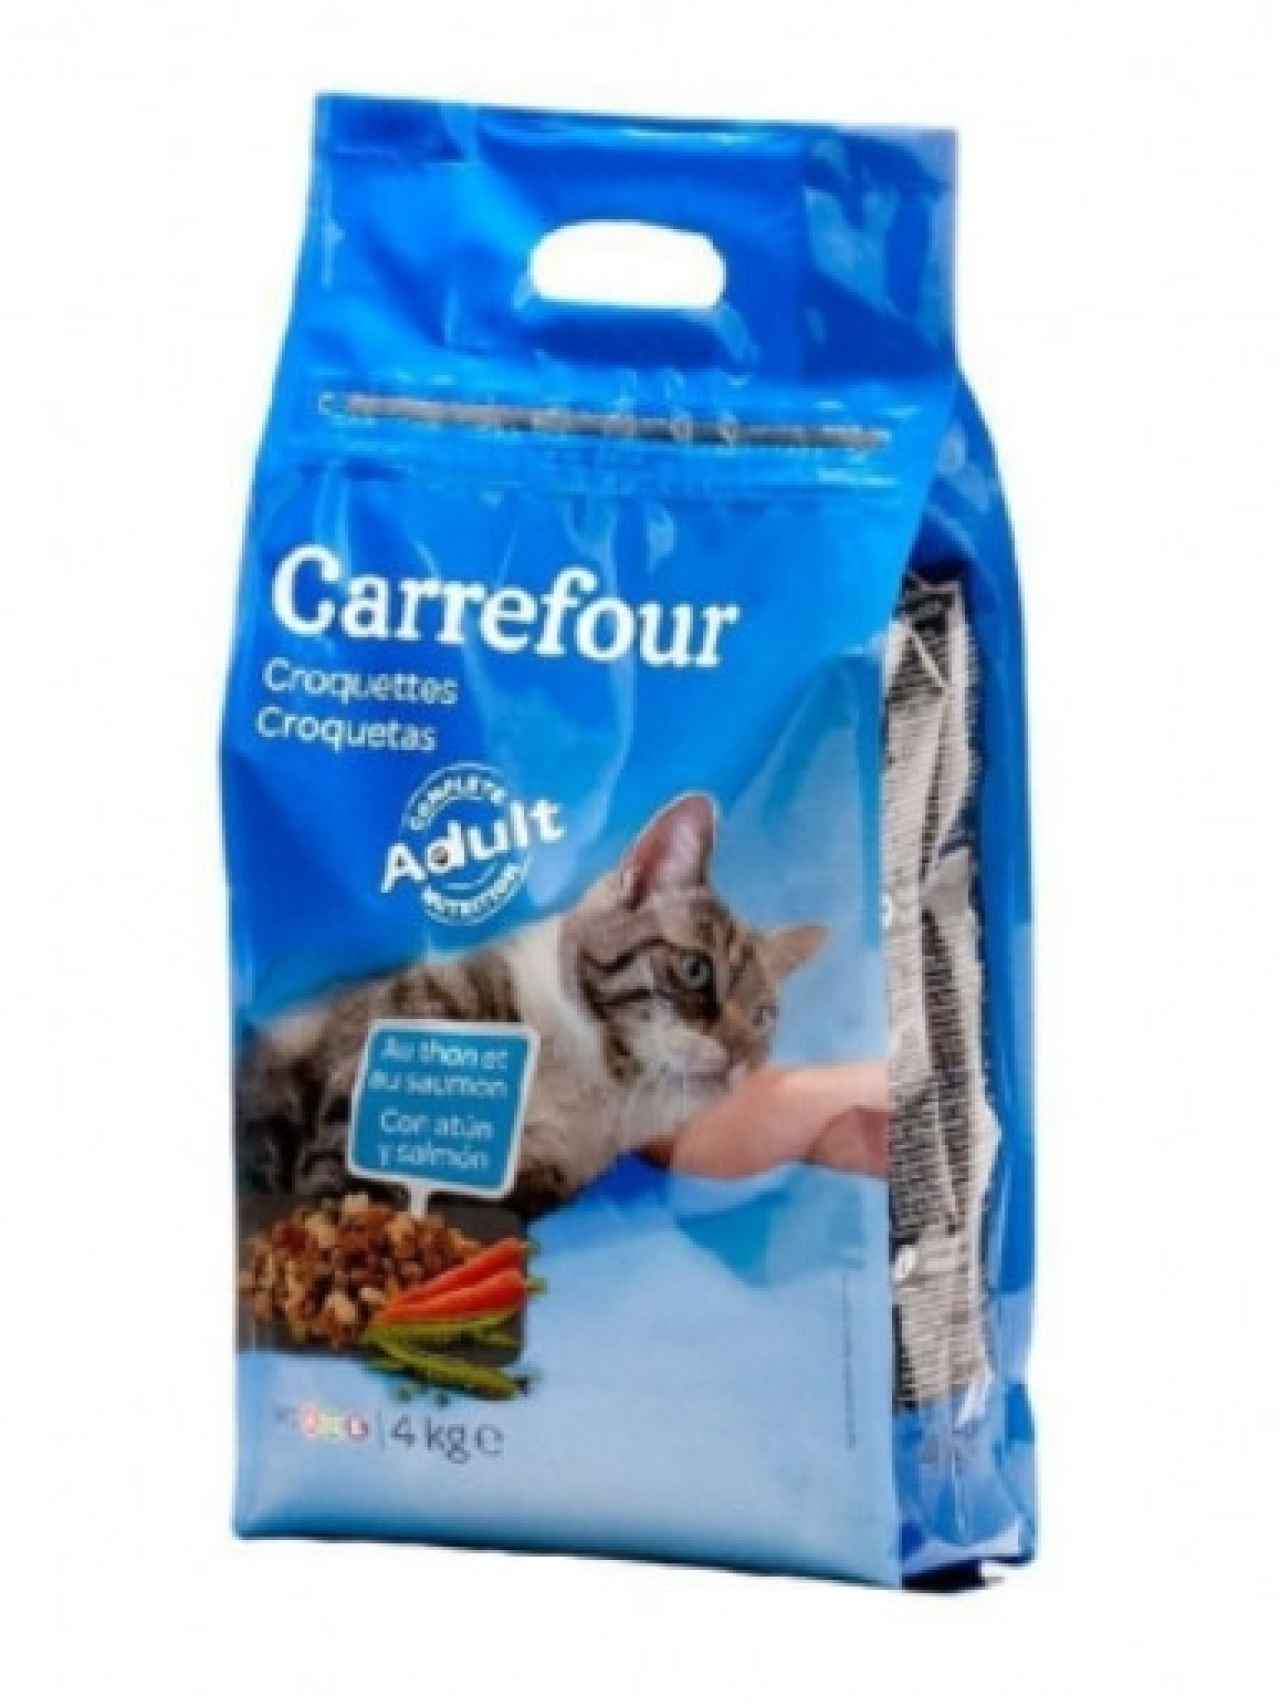 El pienso para gato de Carrefour.